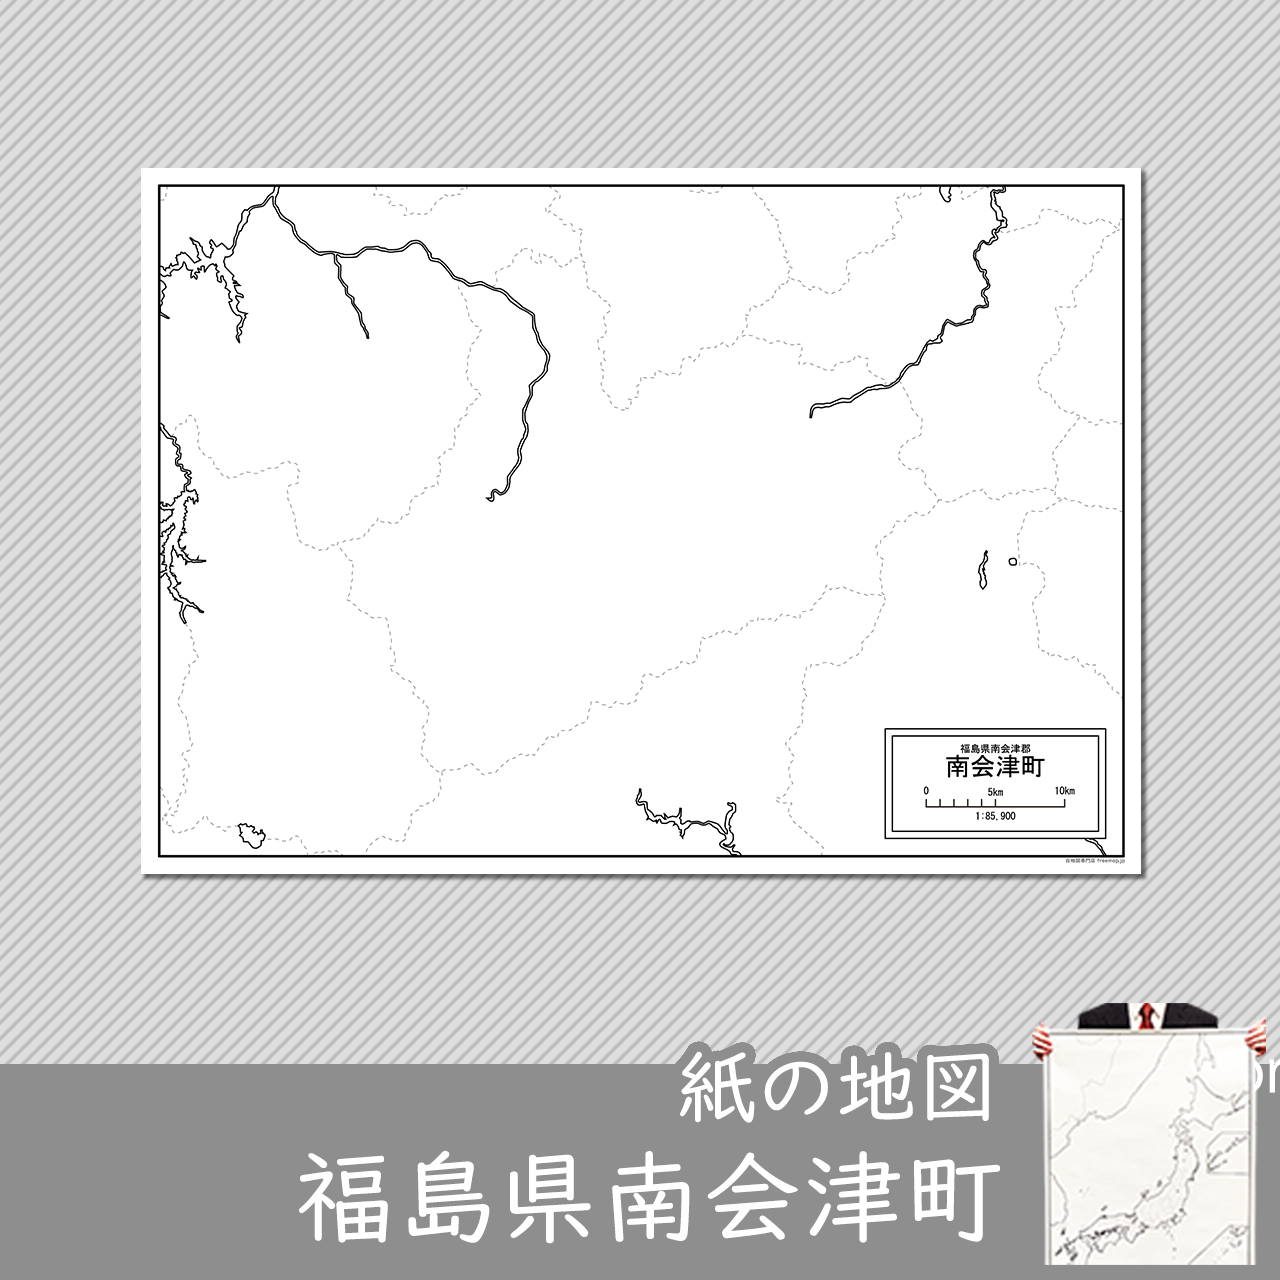 南会津町の紙の白地図のサムネイル